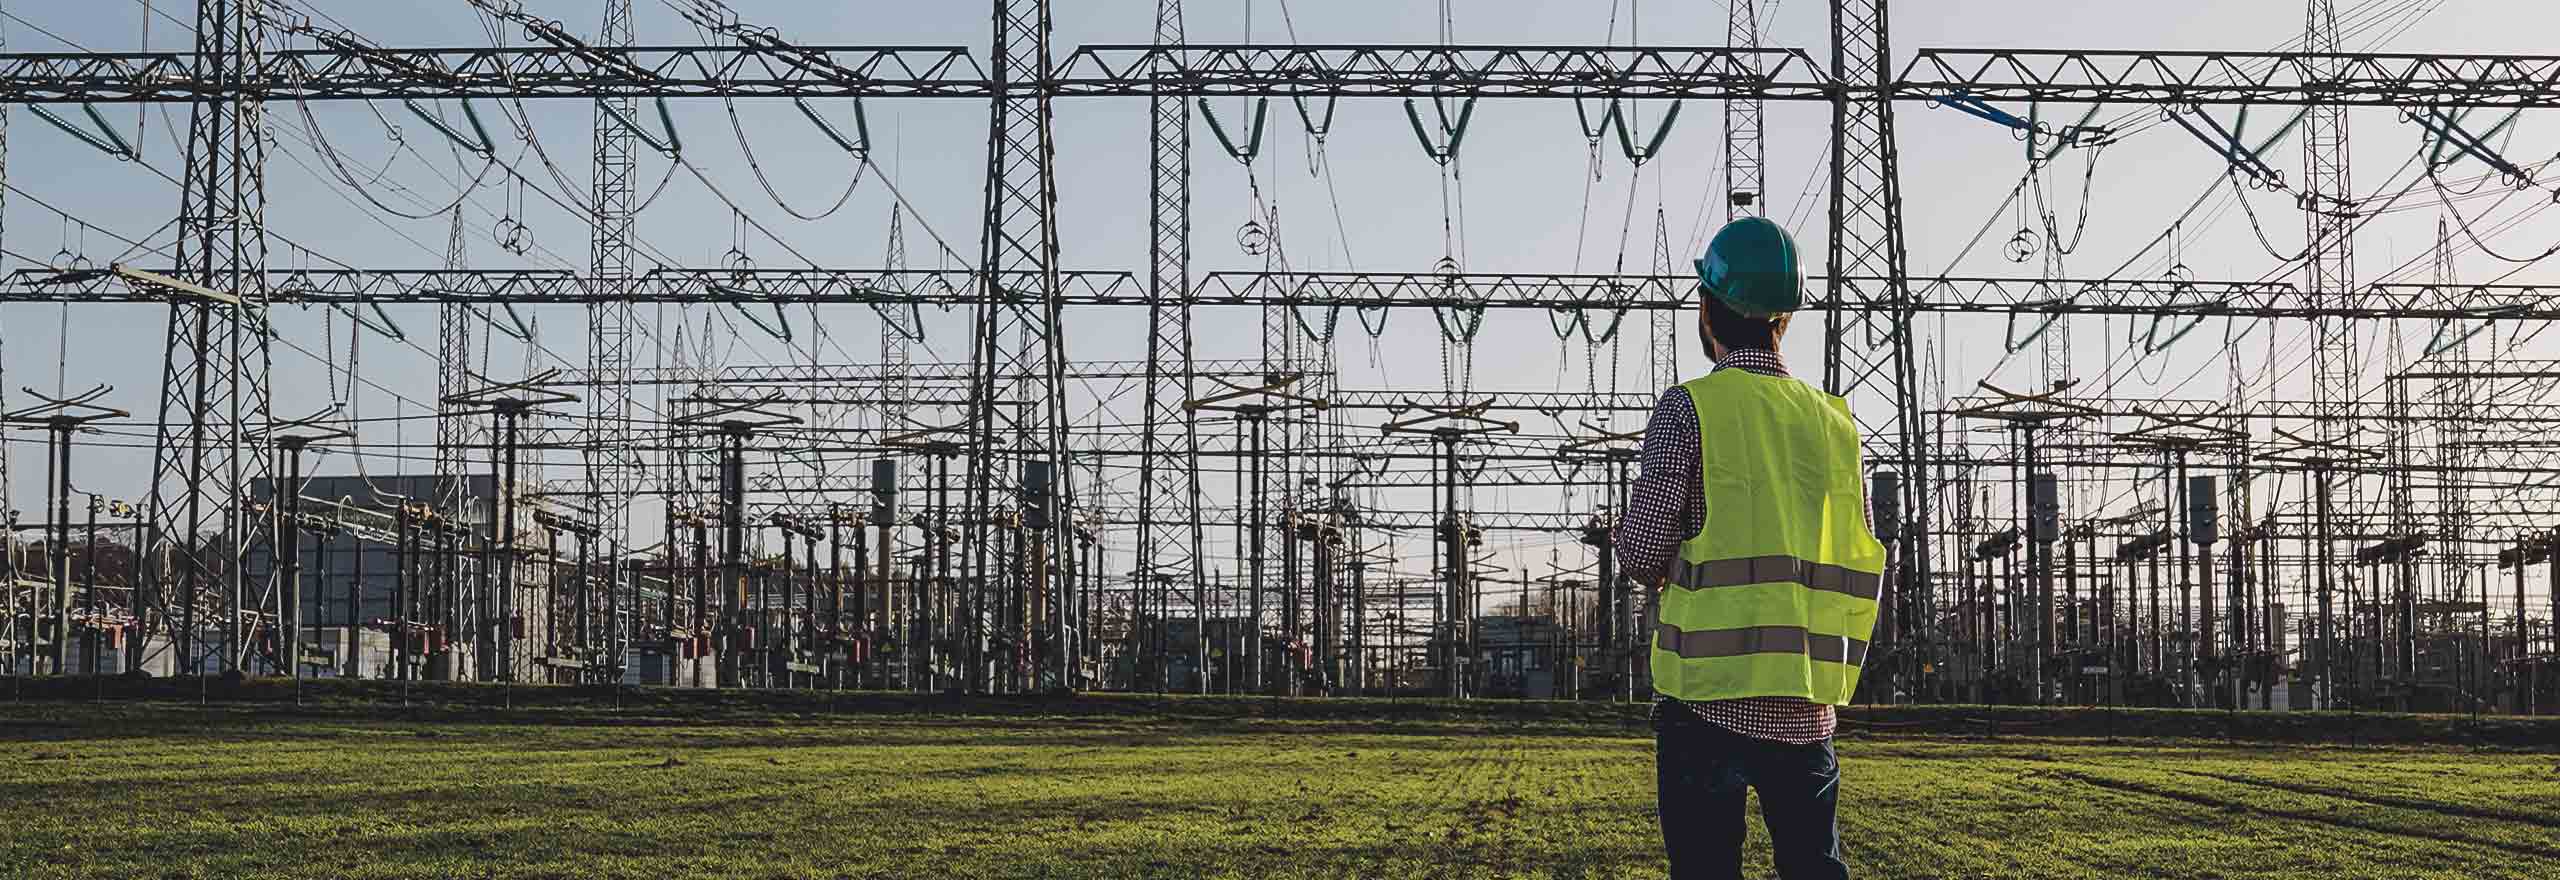 Ingeniero eléctrico con casco y chaleco de seguridad trabajando con una tableta cerca de una estación eléctrica de alta tensión durante la puesta de sol 